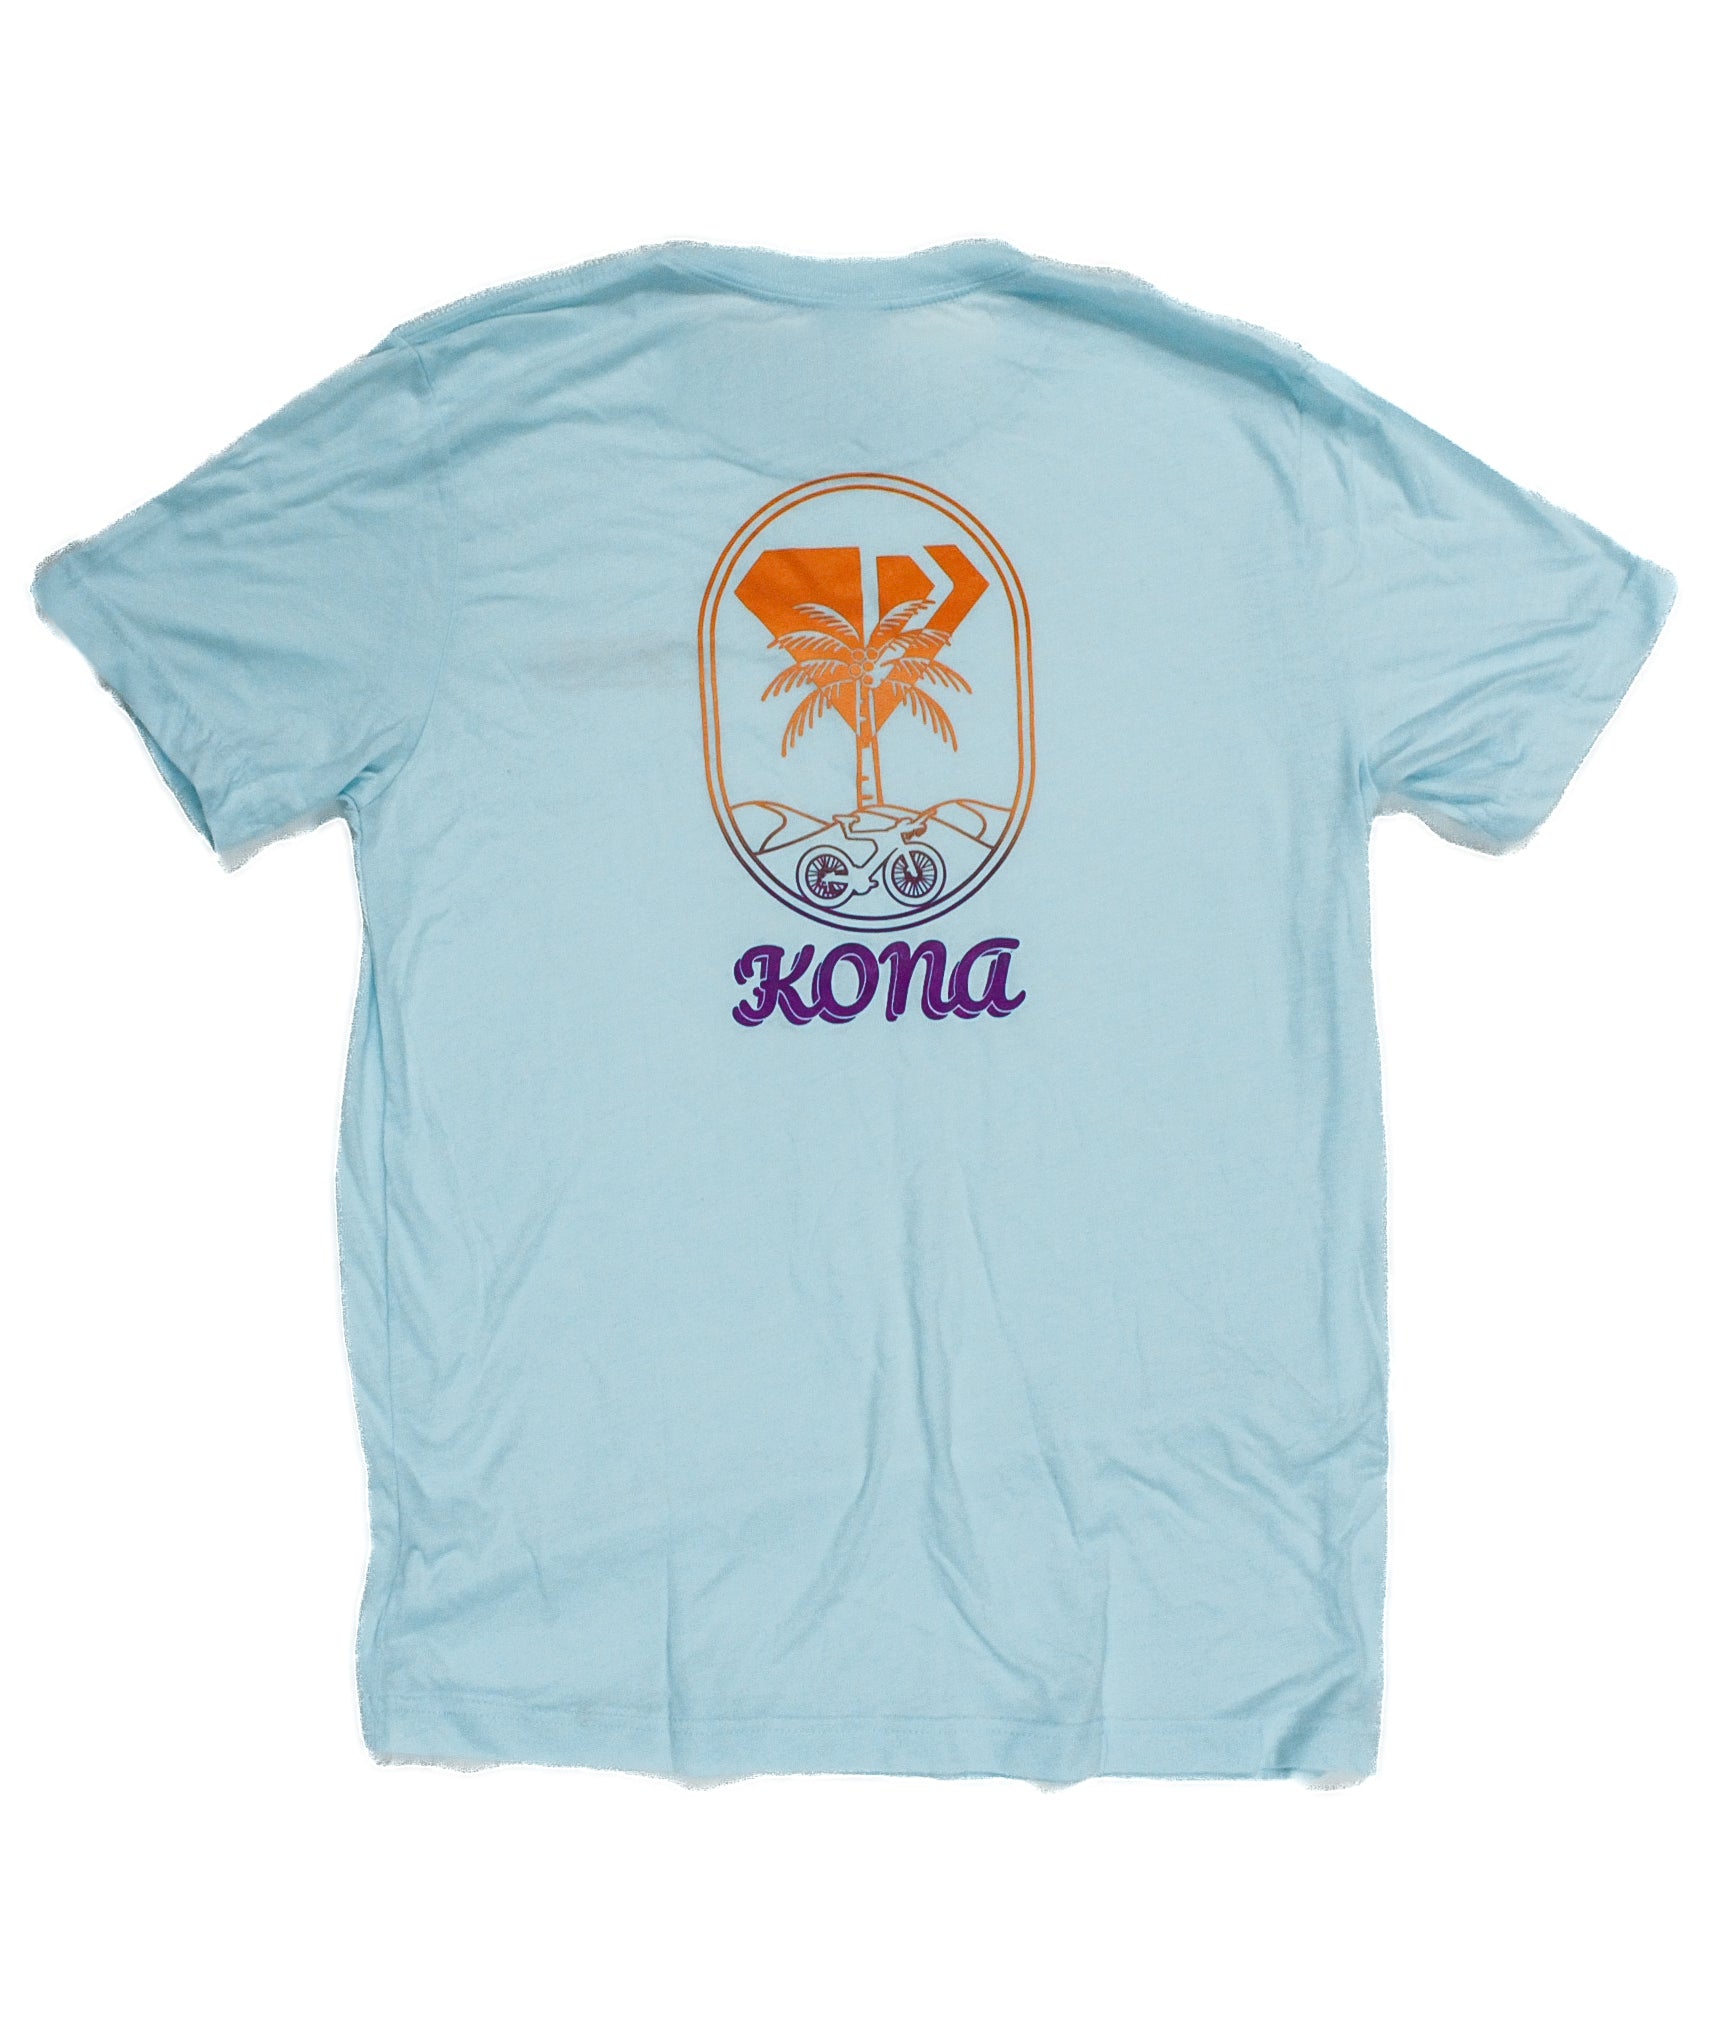 Kona Dimond T-Shirt Version 2